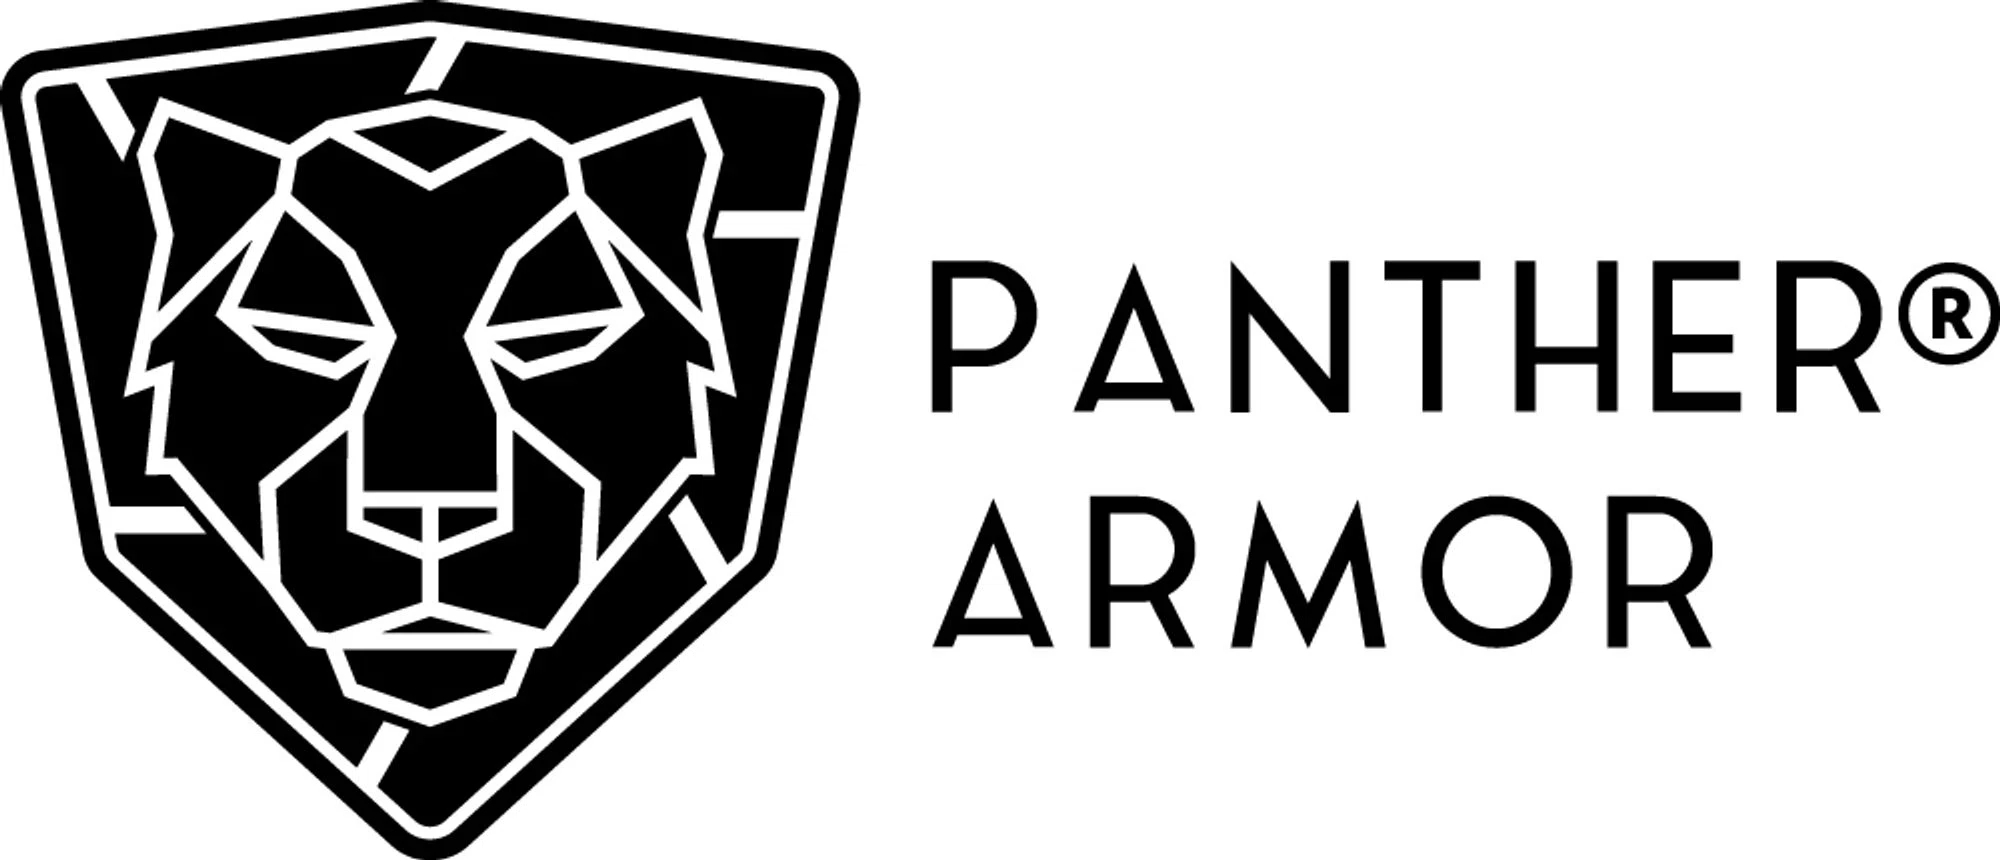 Panther Armor